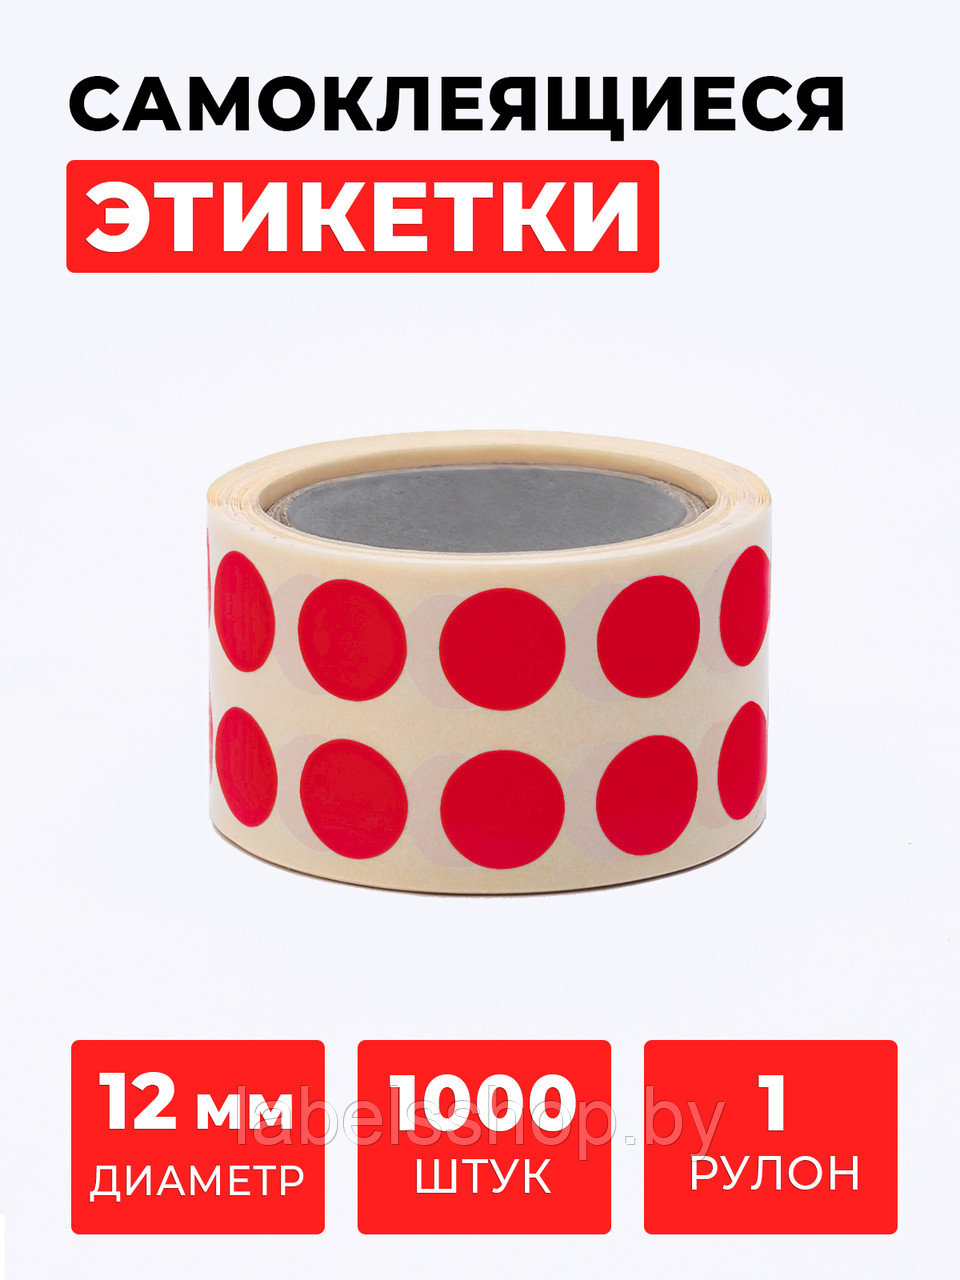 Круглые самоклеящиеся наклейки / этикетки в виде круга (D 12 мм), цвет красный, 1000 шт в ролике.